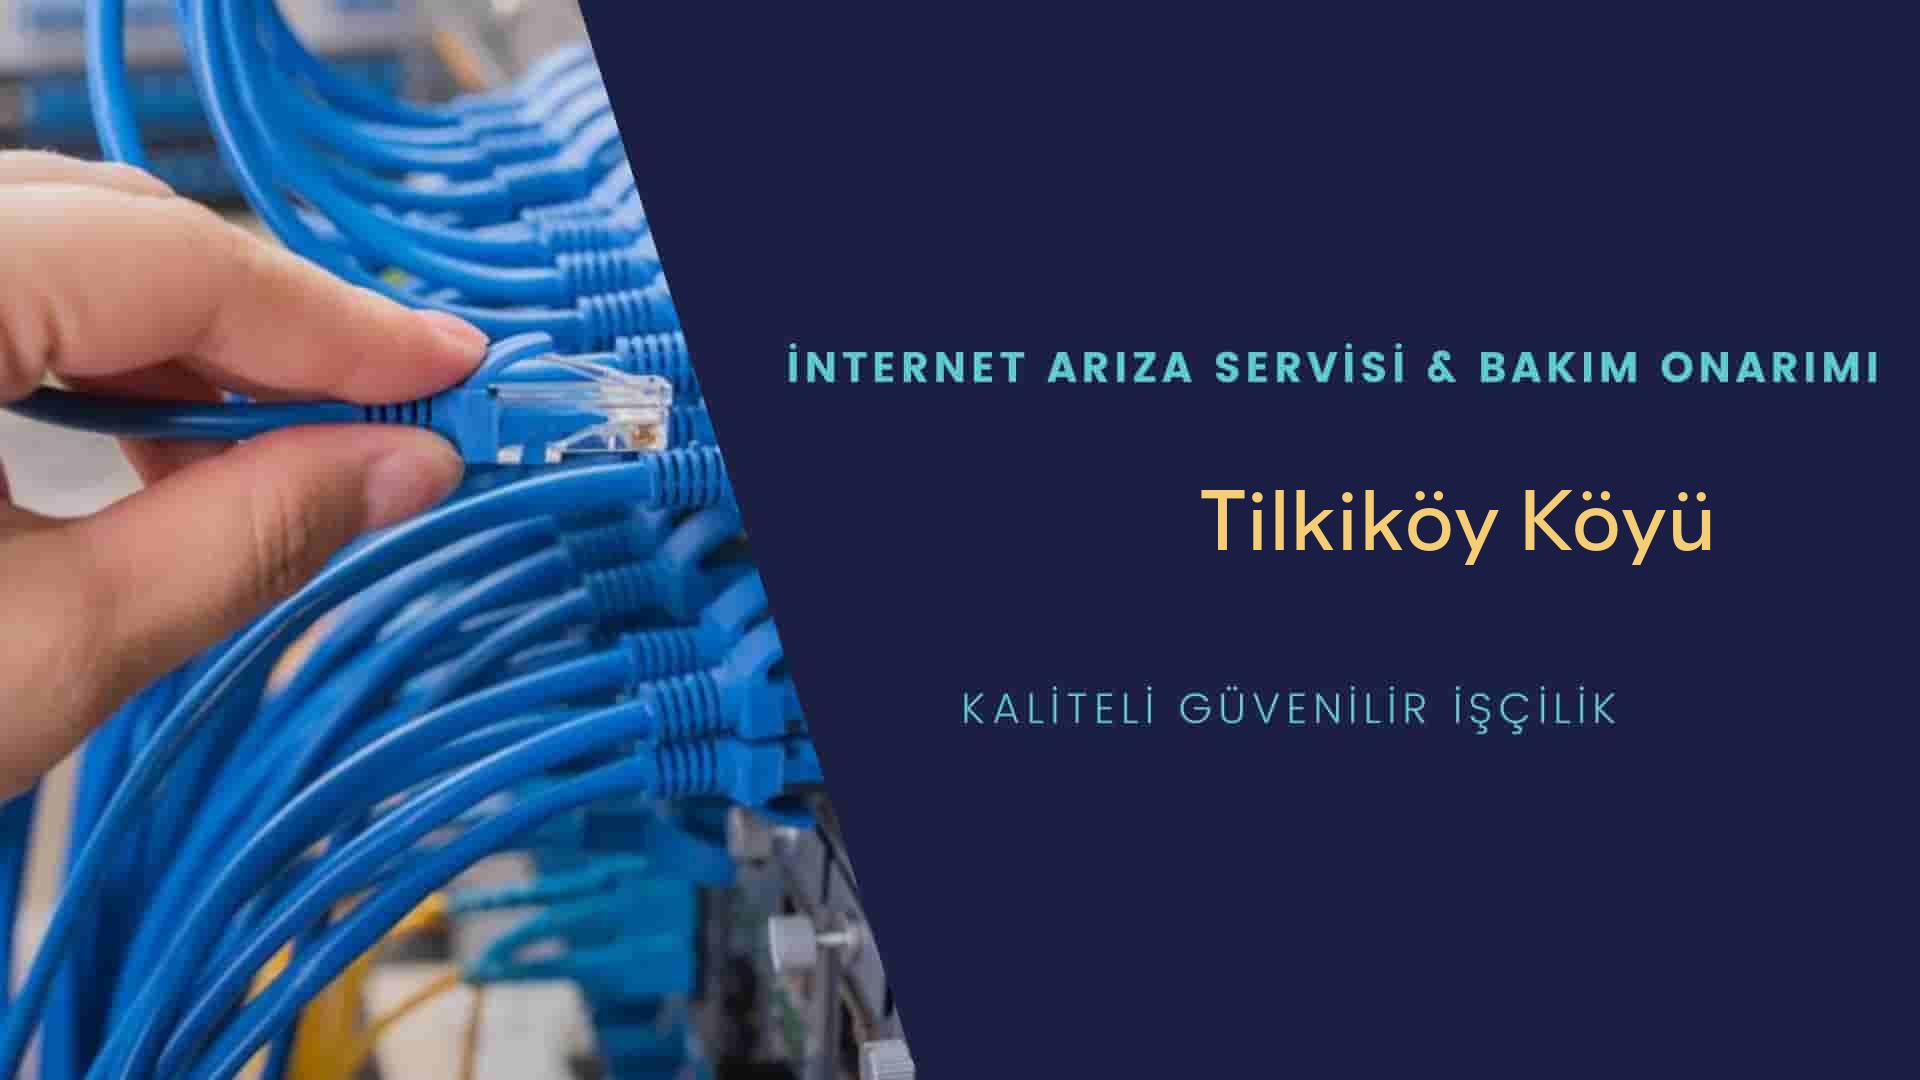 Tilkiköy Köyü internet kablosu çekimi yapan yerler veya elektrikçiler mi? arıyorsunuz doğru yerdesiniz o zaman sizlere 7/24 yardımcı olacak profesyonel ustalarımız bir telefon kadar yakındır size.